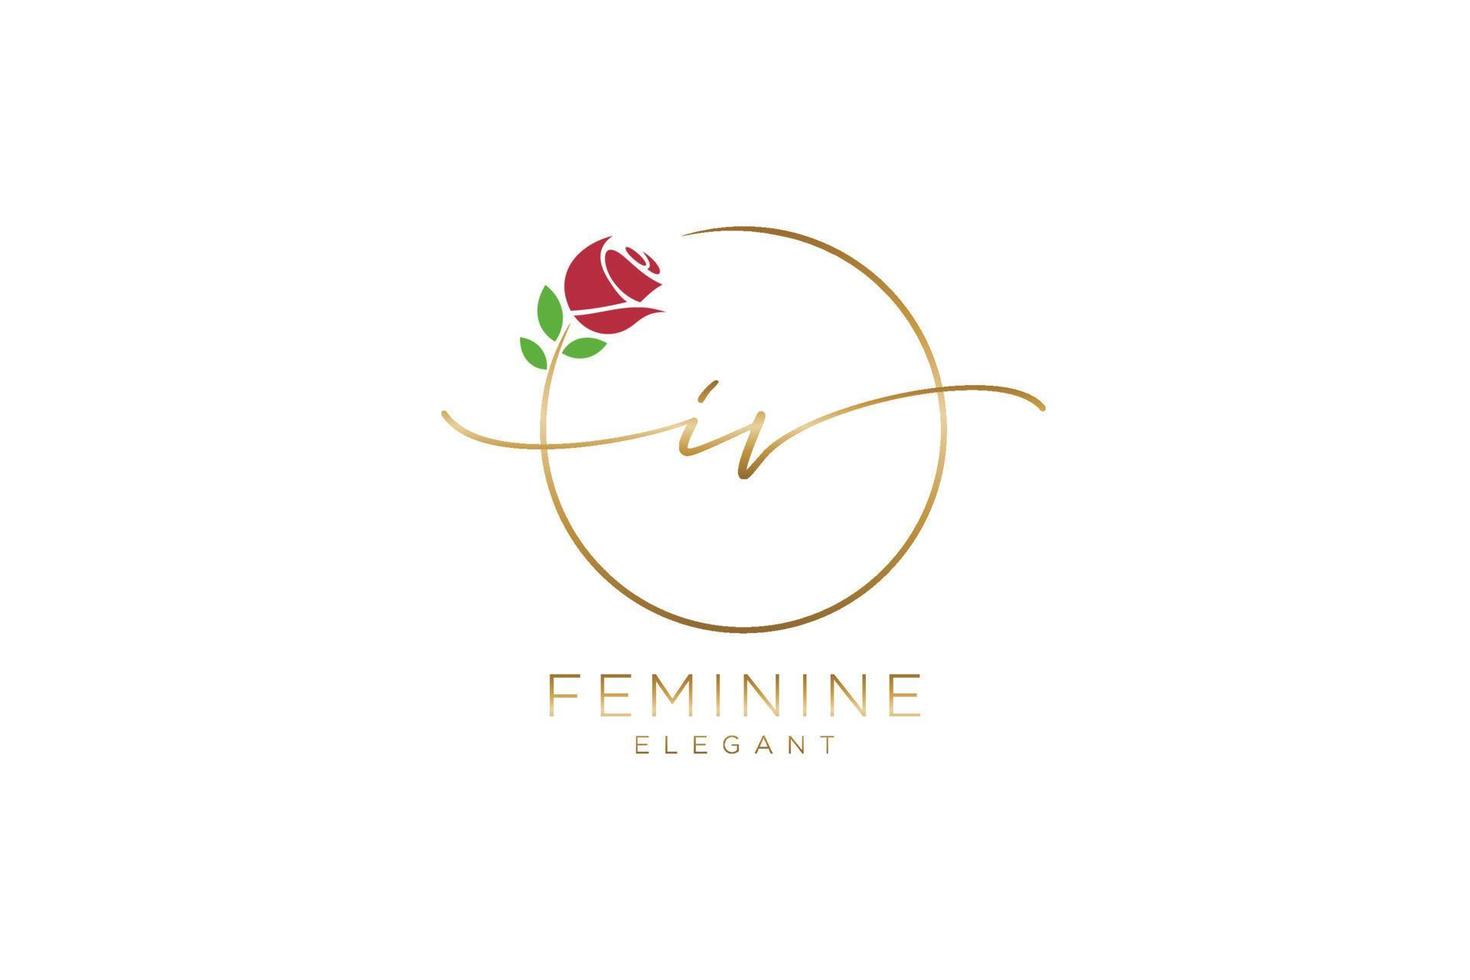 anfängliches iv-feminines Logo-Schönheitsmonogramm und elegantes Logo-Design, Handschrift-Logo der Erstunterschrift, Hochzeit, Mode, Blumen und Pflanzen mit kreativer Vorlage. vektor